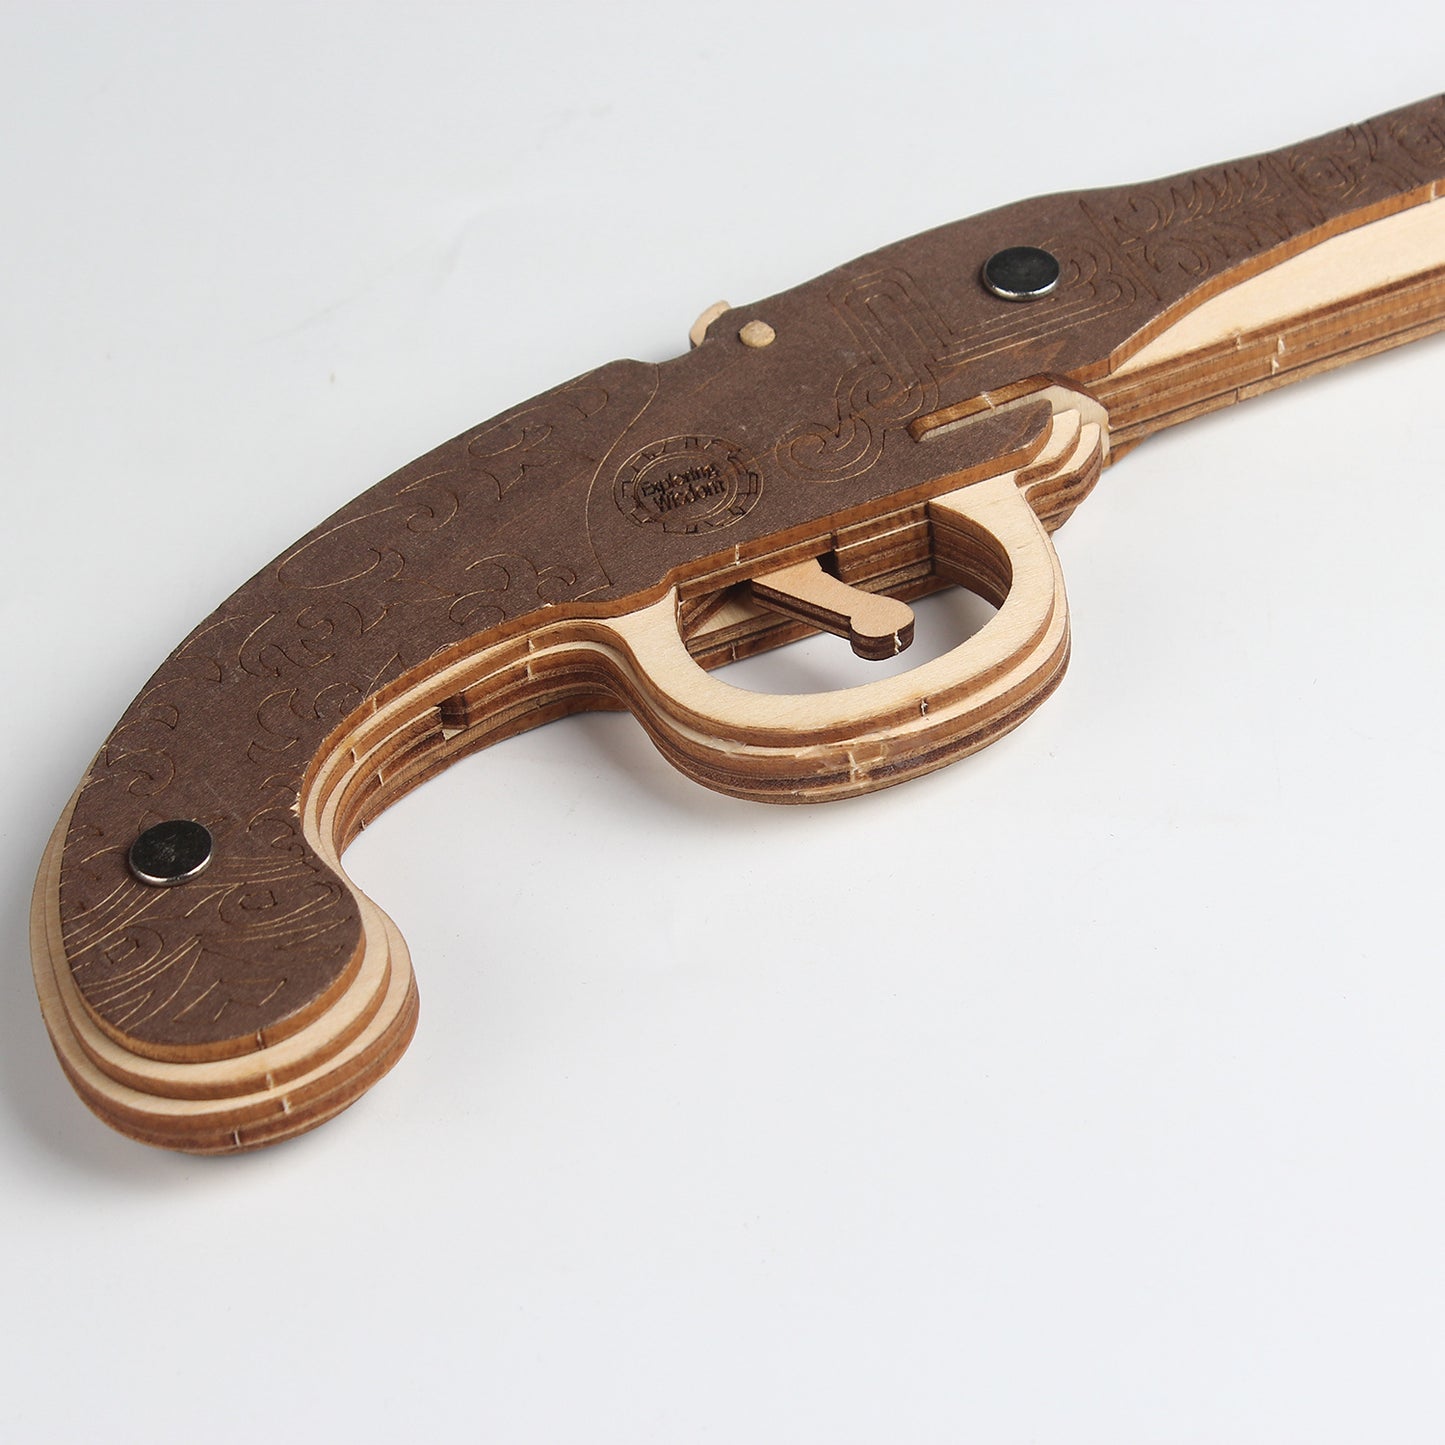 DIY 3D Flint Gun Rubber Band Gun Wooden Puzzle Kit